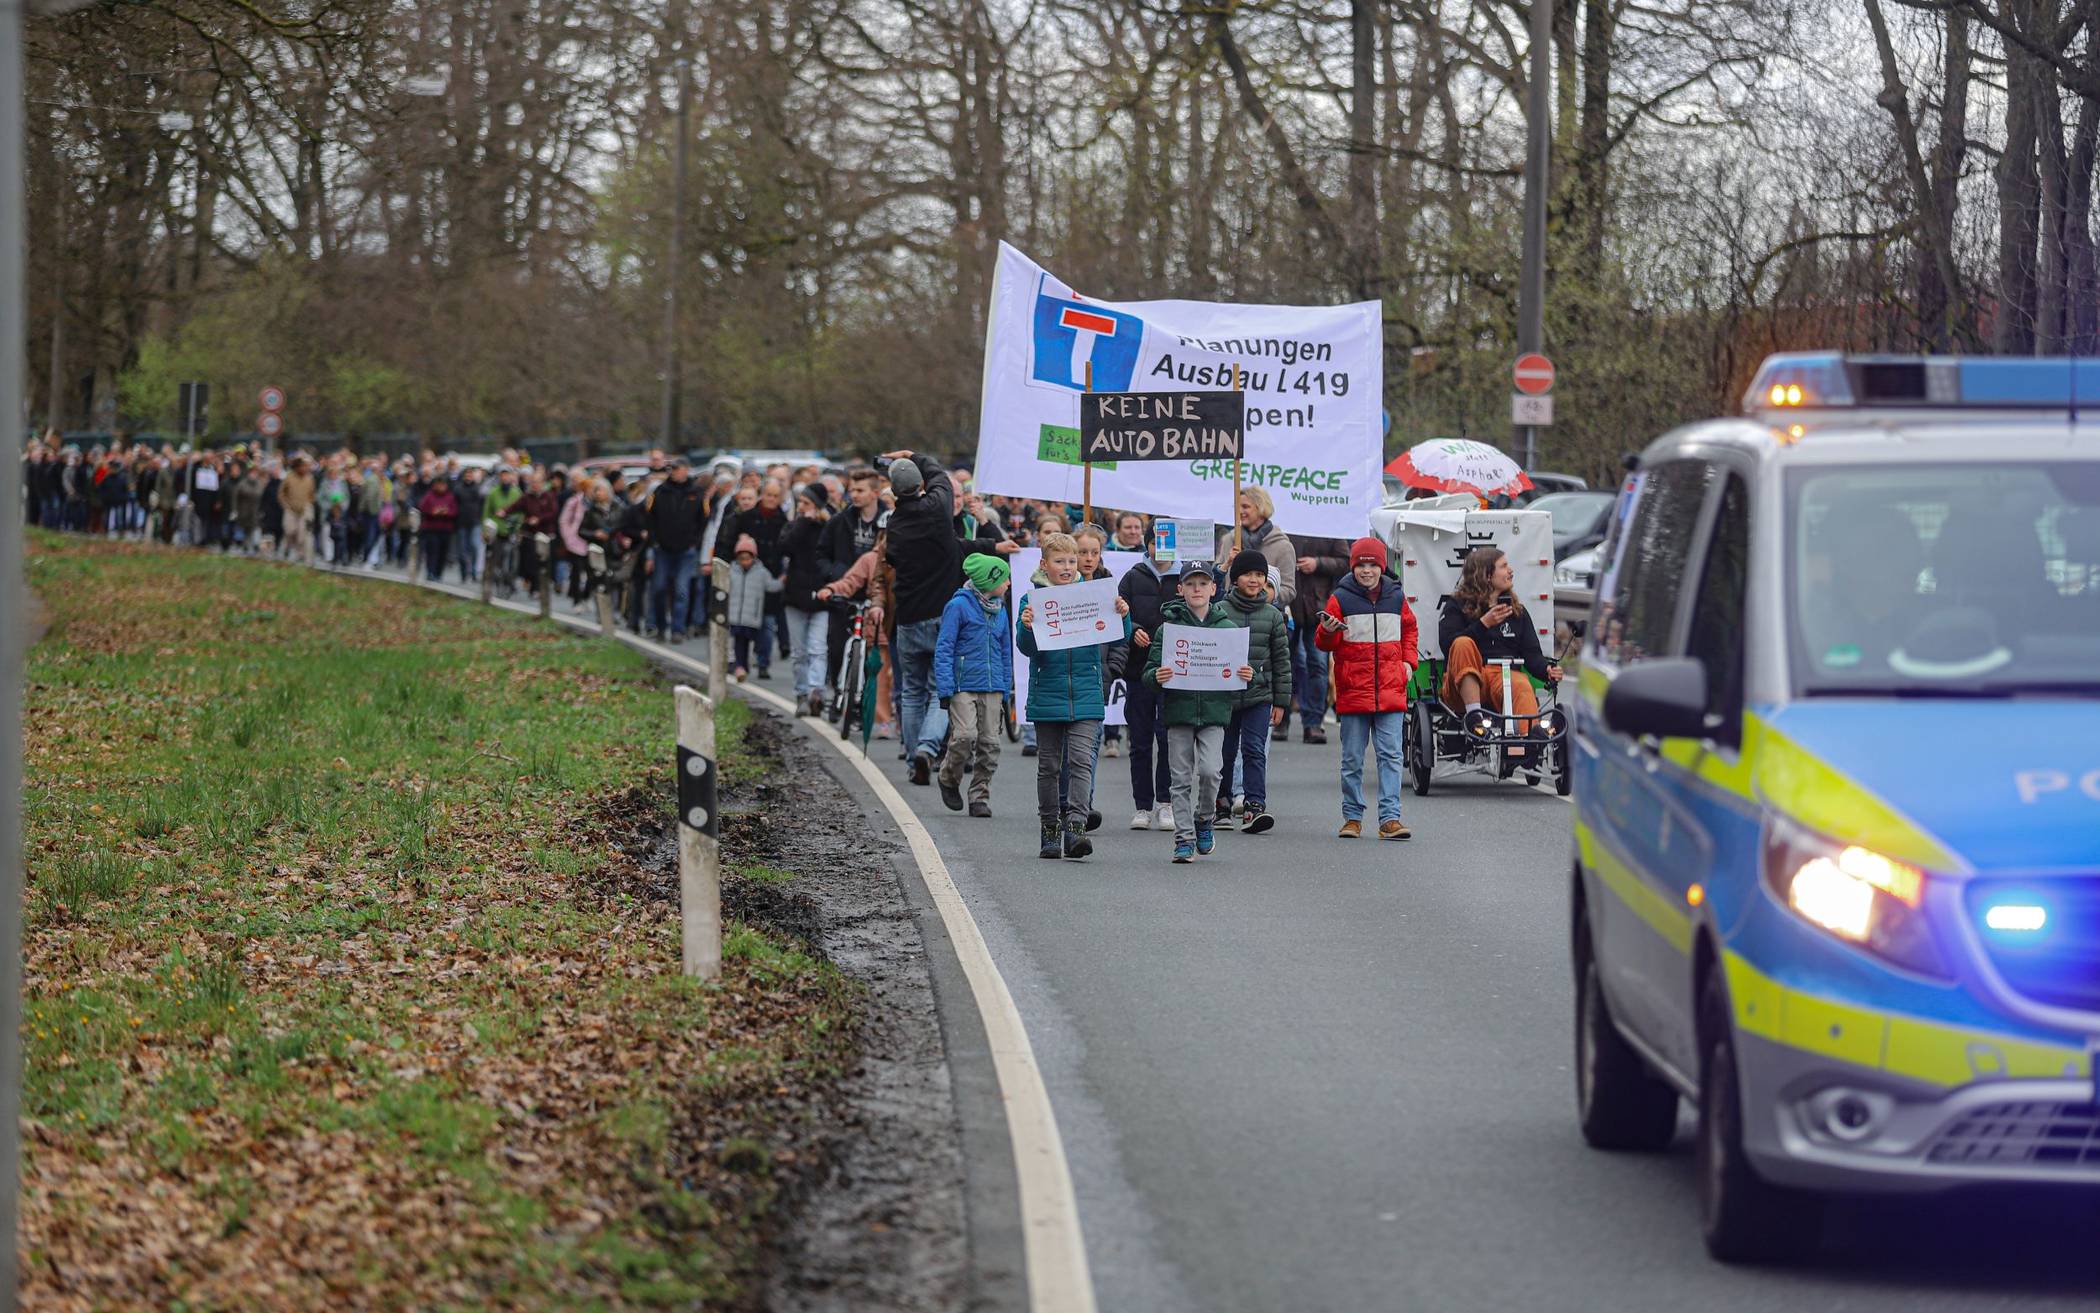 Bilder: Demo gegen den L419-Ausbau​ in Wuppertal-Ronsdorf